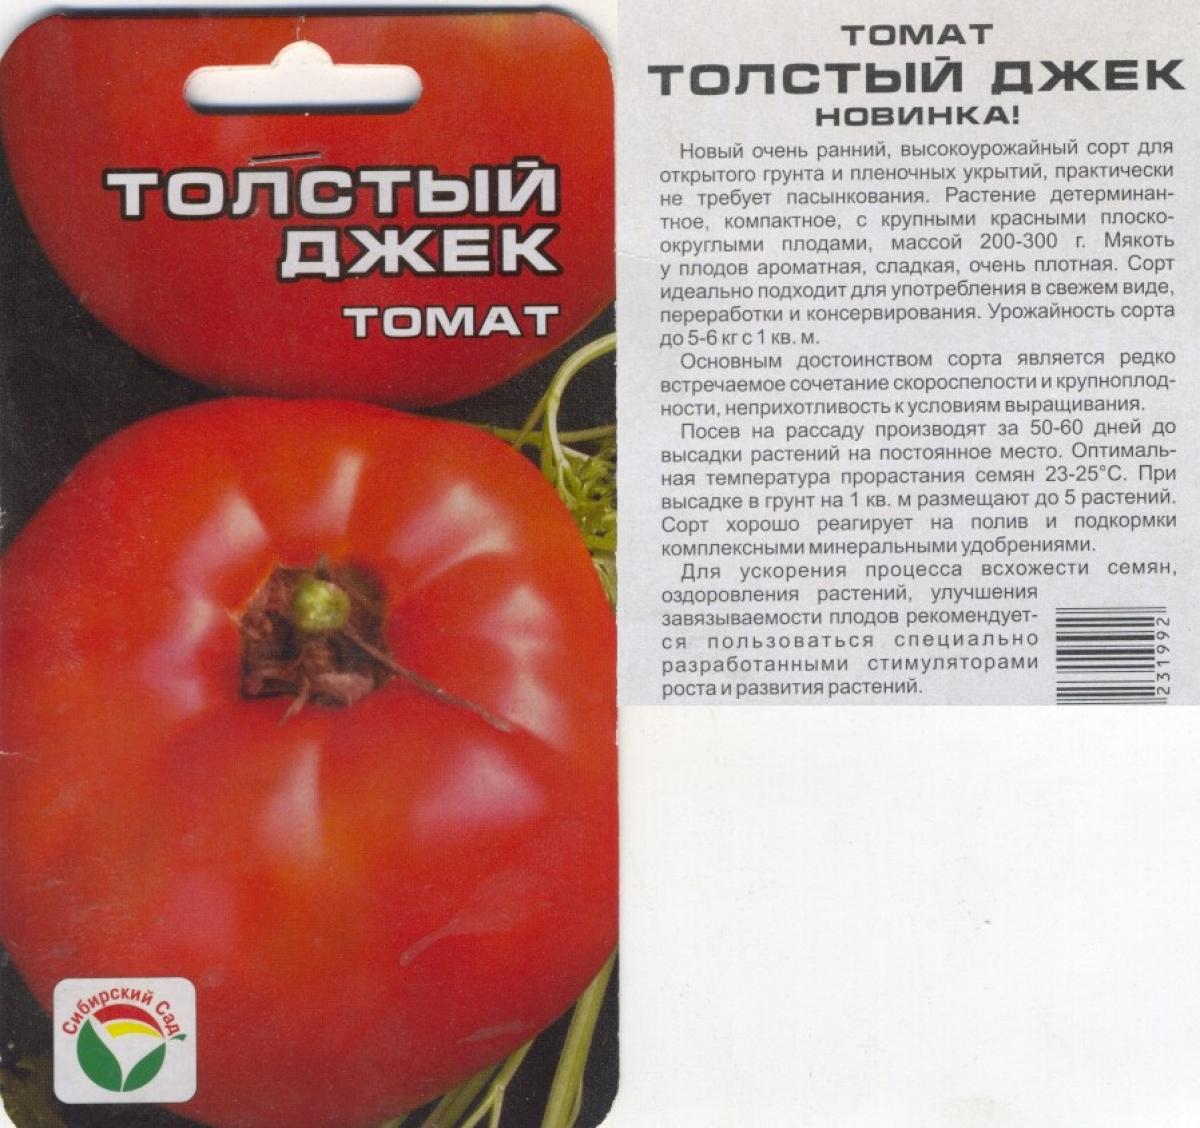 Позднеспелые сорта томатов: подробный перечень разновидностей помидор с описанием урожайности и рекомендациями по выращиванию в теплицах и открытом грунте русский фермер